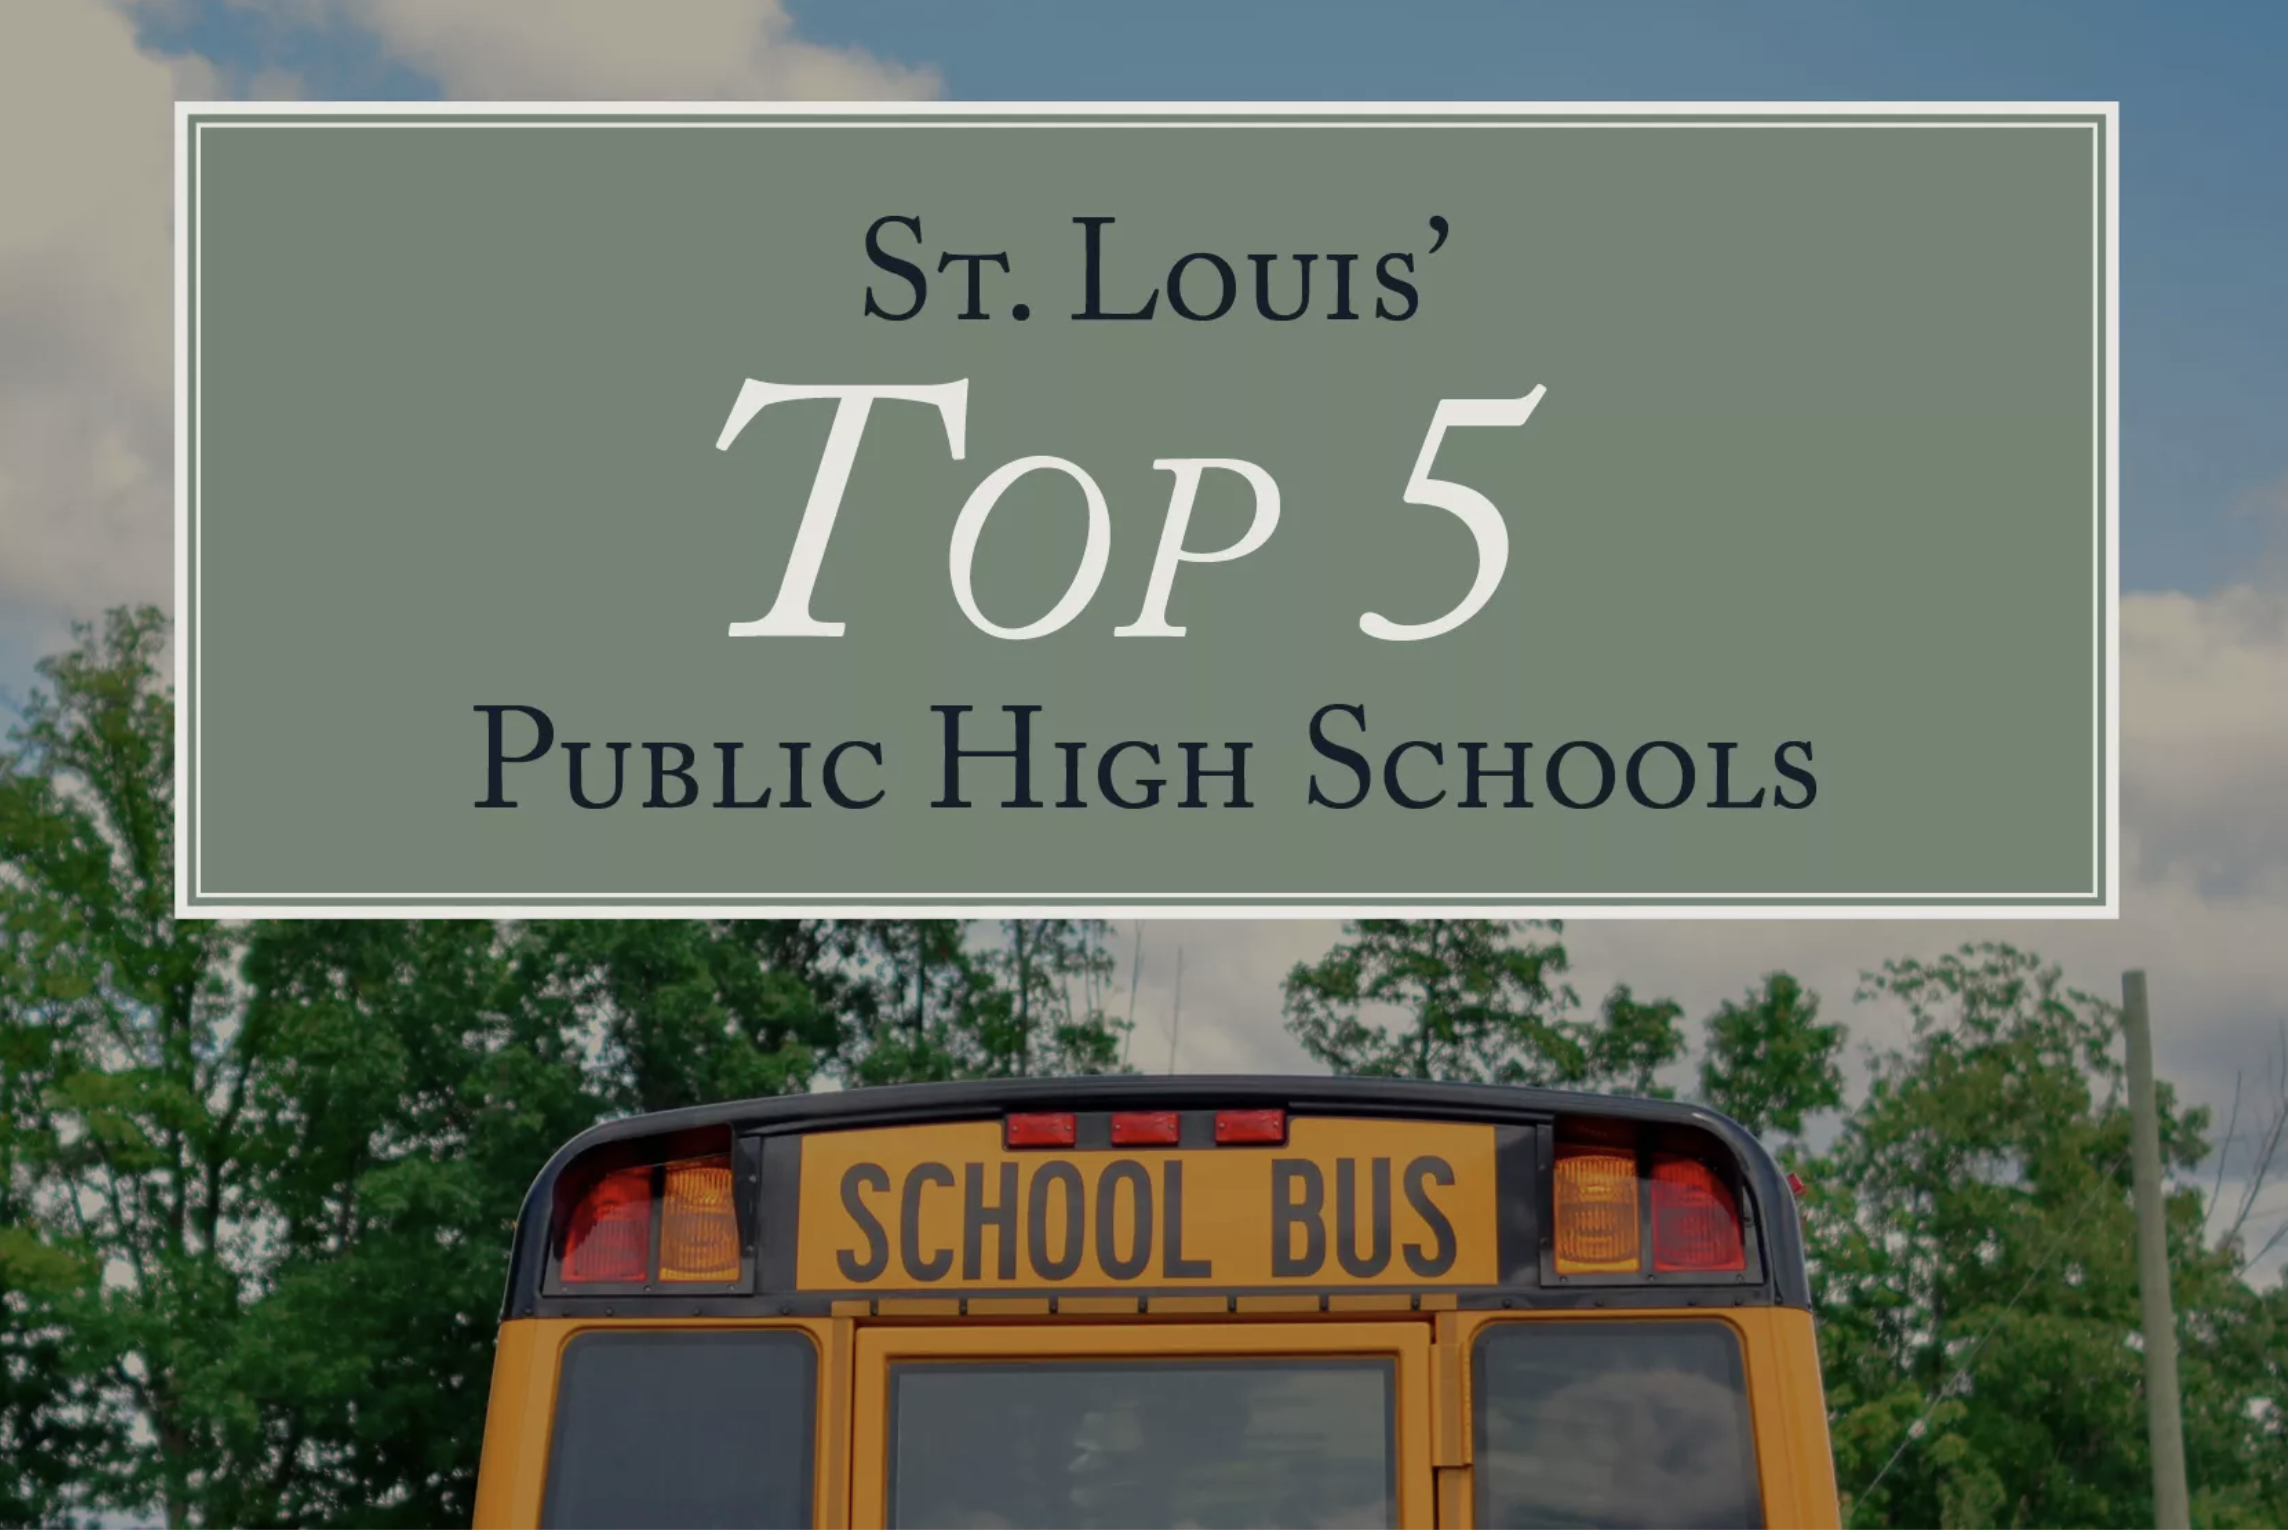 St. Louis’ Top 5 Public High Schools